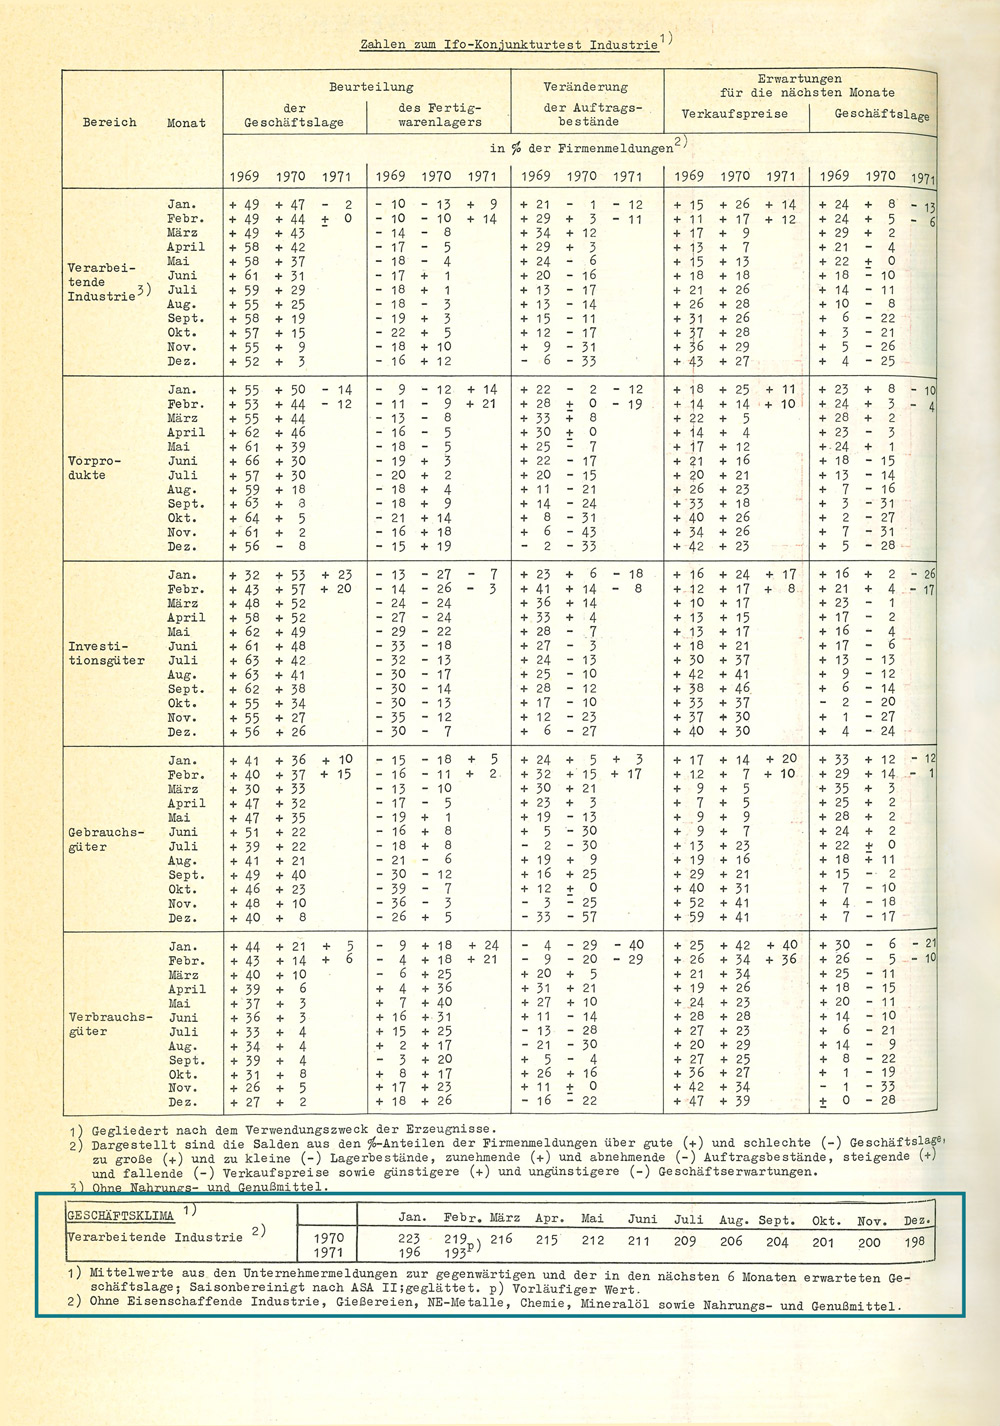 Der ifo Geschäftsklimaindex wird 1971 erstmals in einer der Dezemberausgaben des ifo Schnelldienstes veröffentlicht.